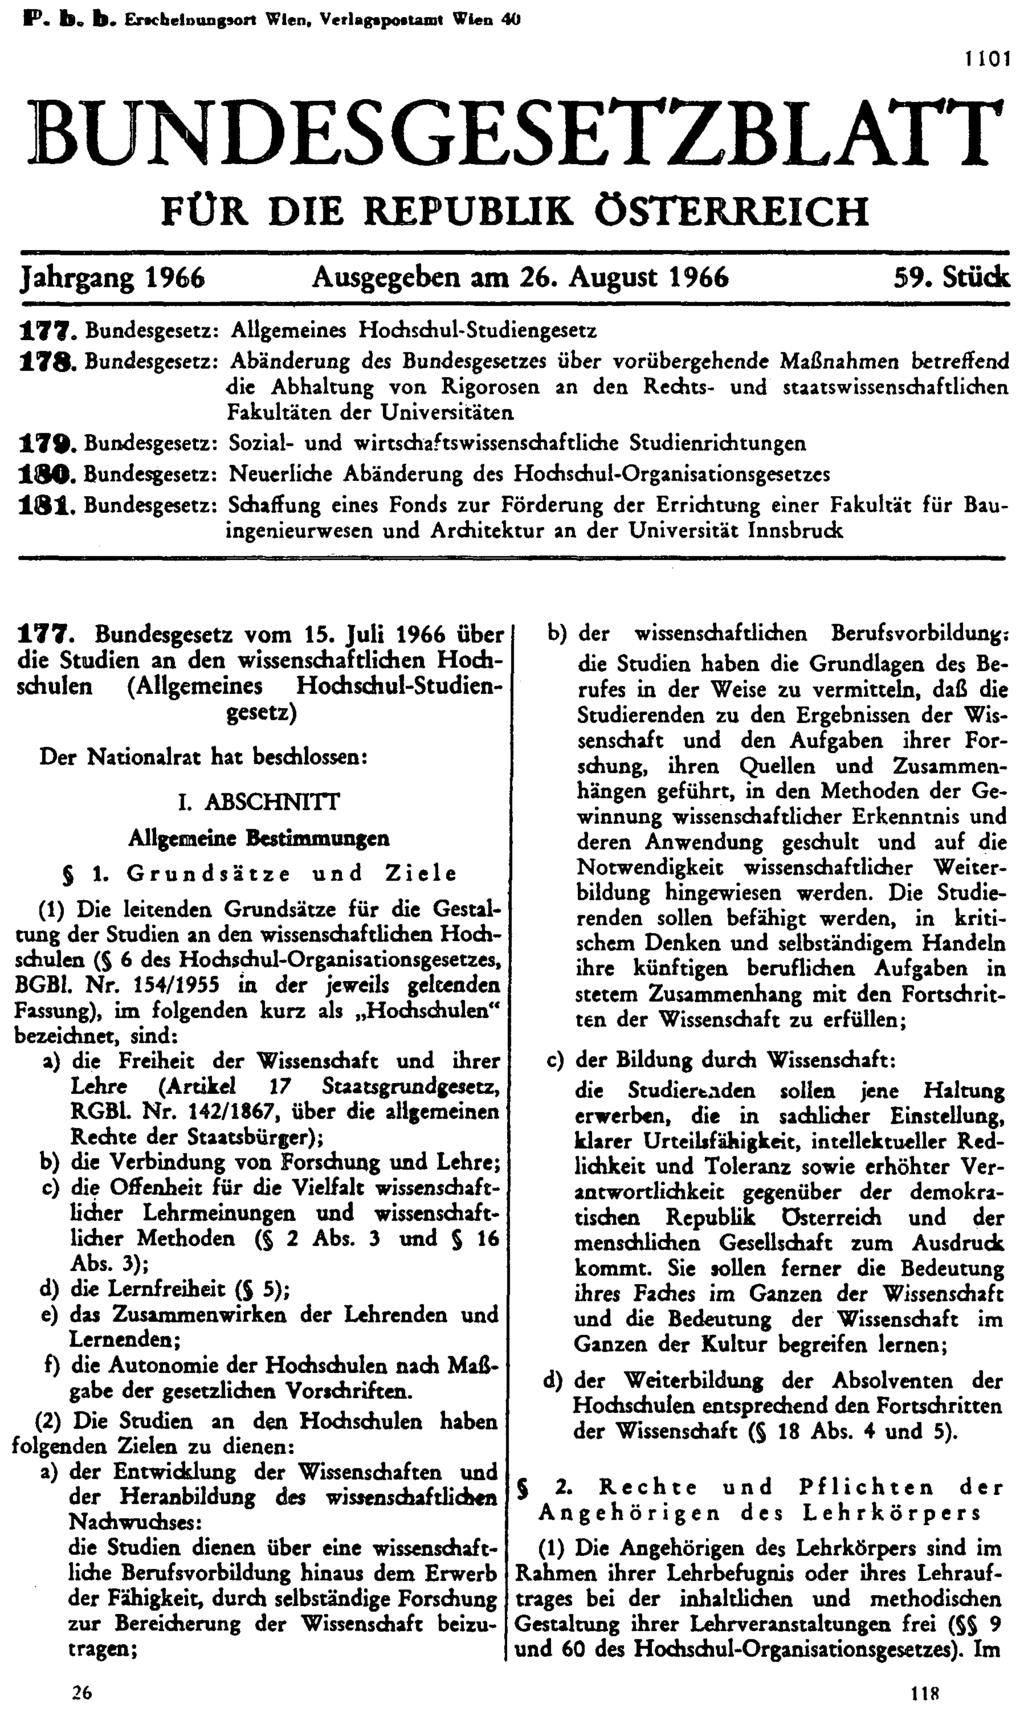 P. b. b. Erscheinungsort Wien, Verlagspostamt Wien 40 BUNDESGESETZBLATT FÜR DIE REPUBLIK ÖSTERREICH Jahrgang 1966 Ausgegeben am 26. August 1966 59. Stück 177.